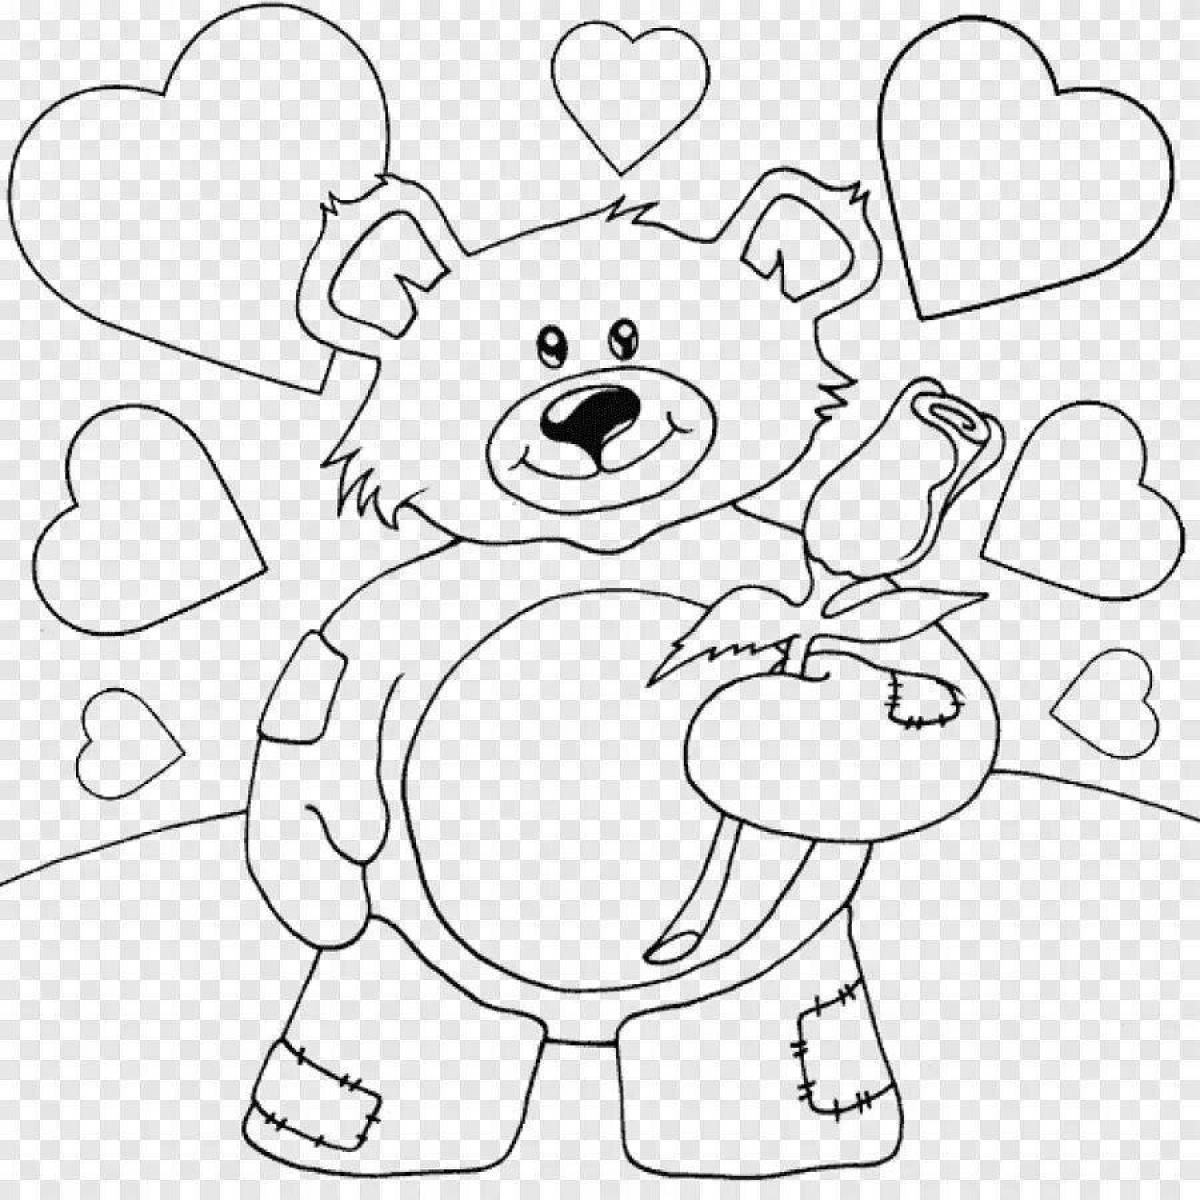 Joyful teddy bear with a heart coloring book